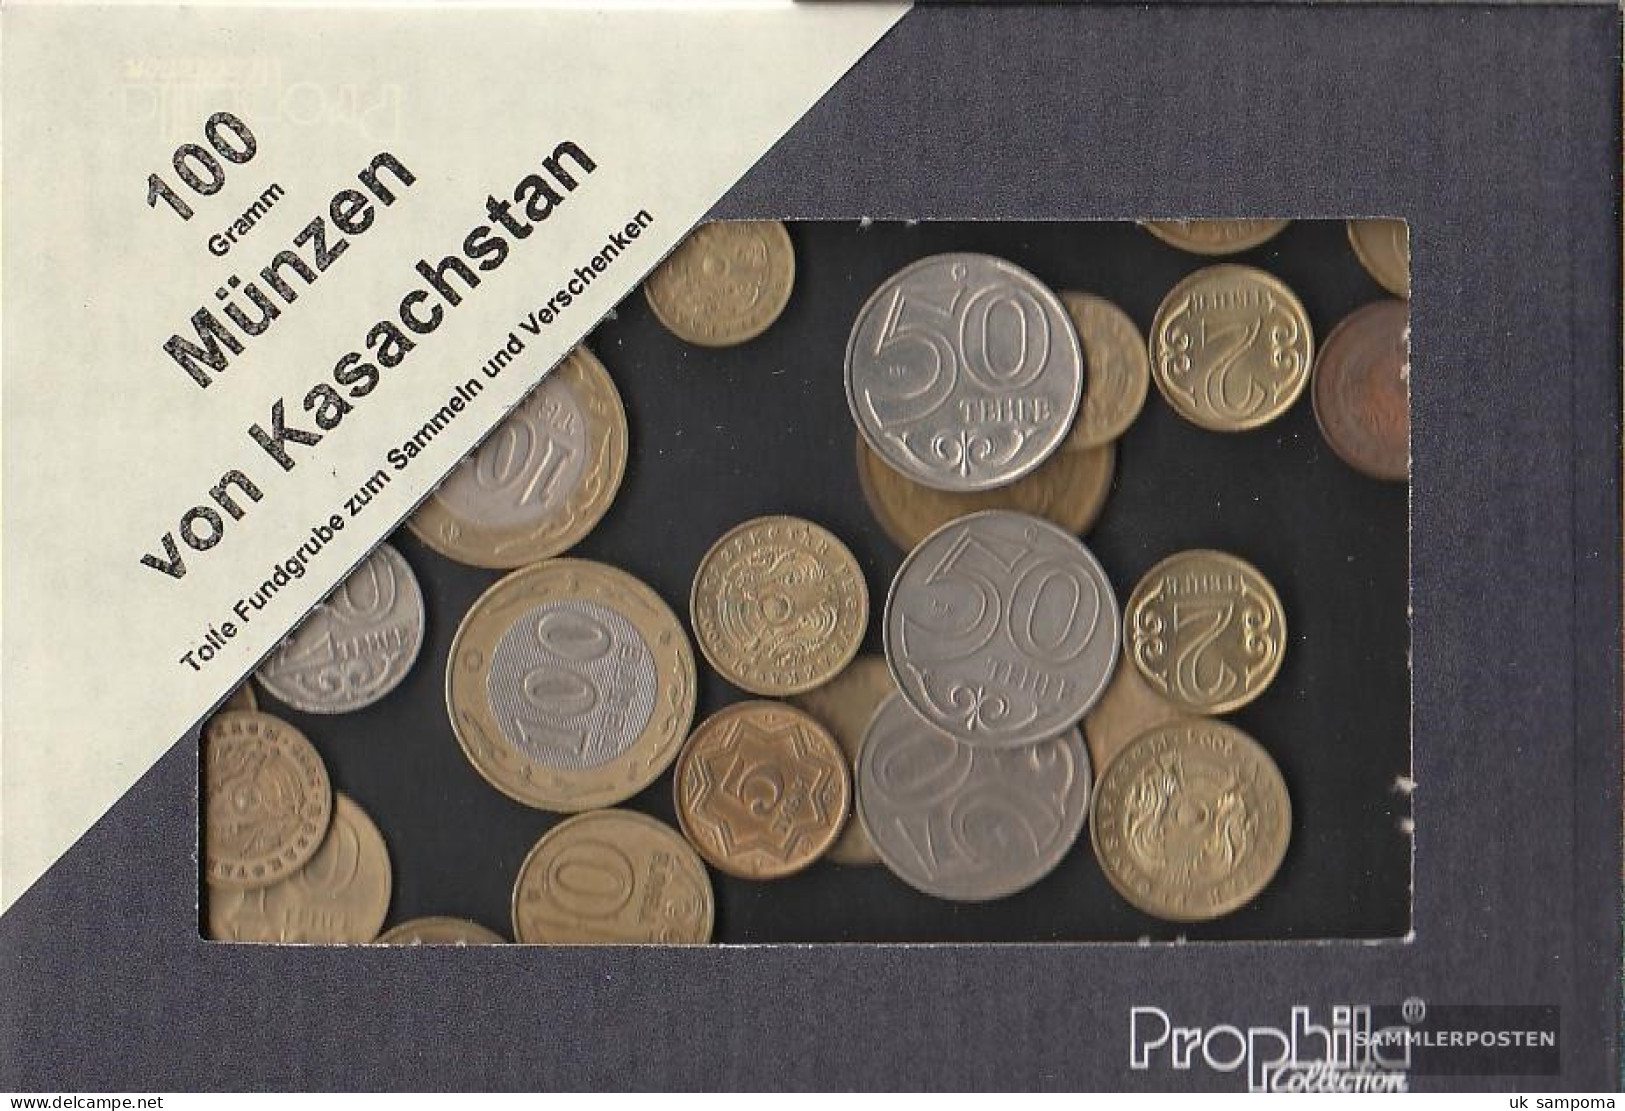 Kazakhstan 100 Grams Münzkiloware - Lots & Kiloware - Coins